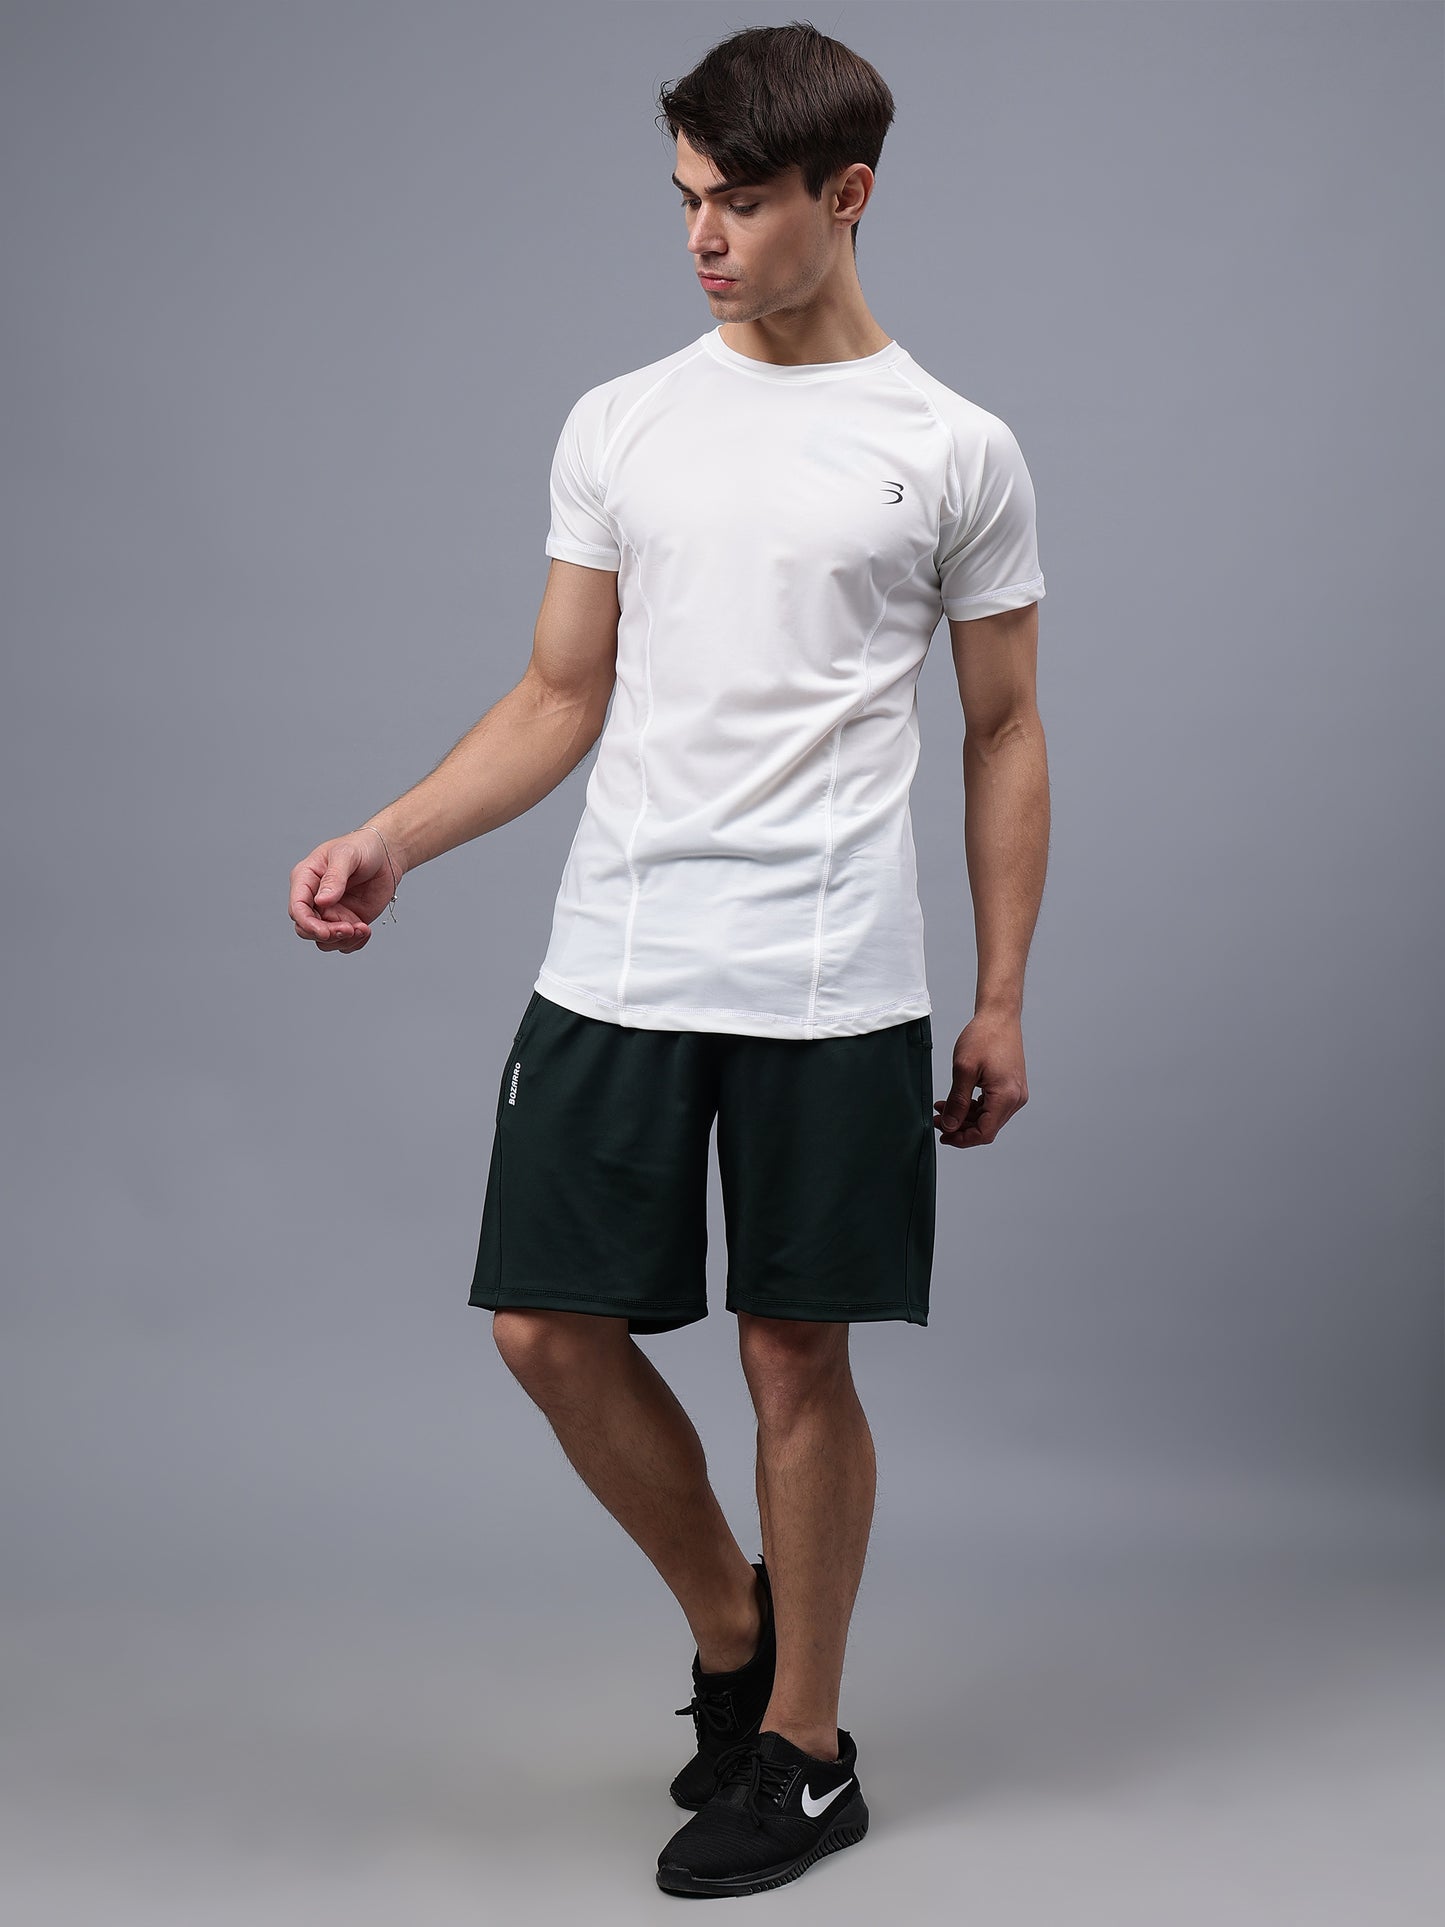 Round Neck Apple Cut T Shirt | Men's Half Sleeve Apple Cut T-Shirt | Round Neck Solid Regular Fit T-Shirt for Men's-white